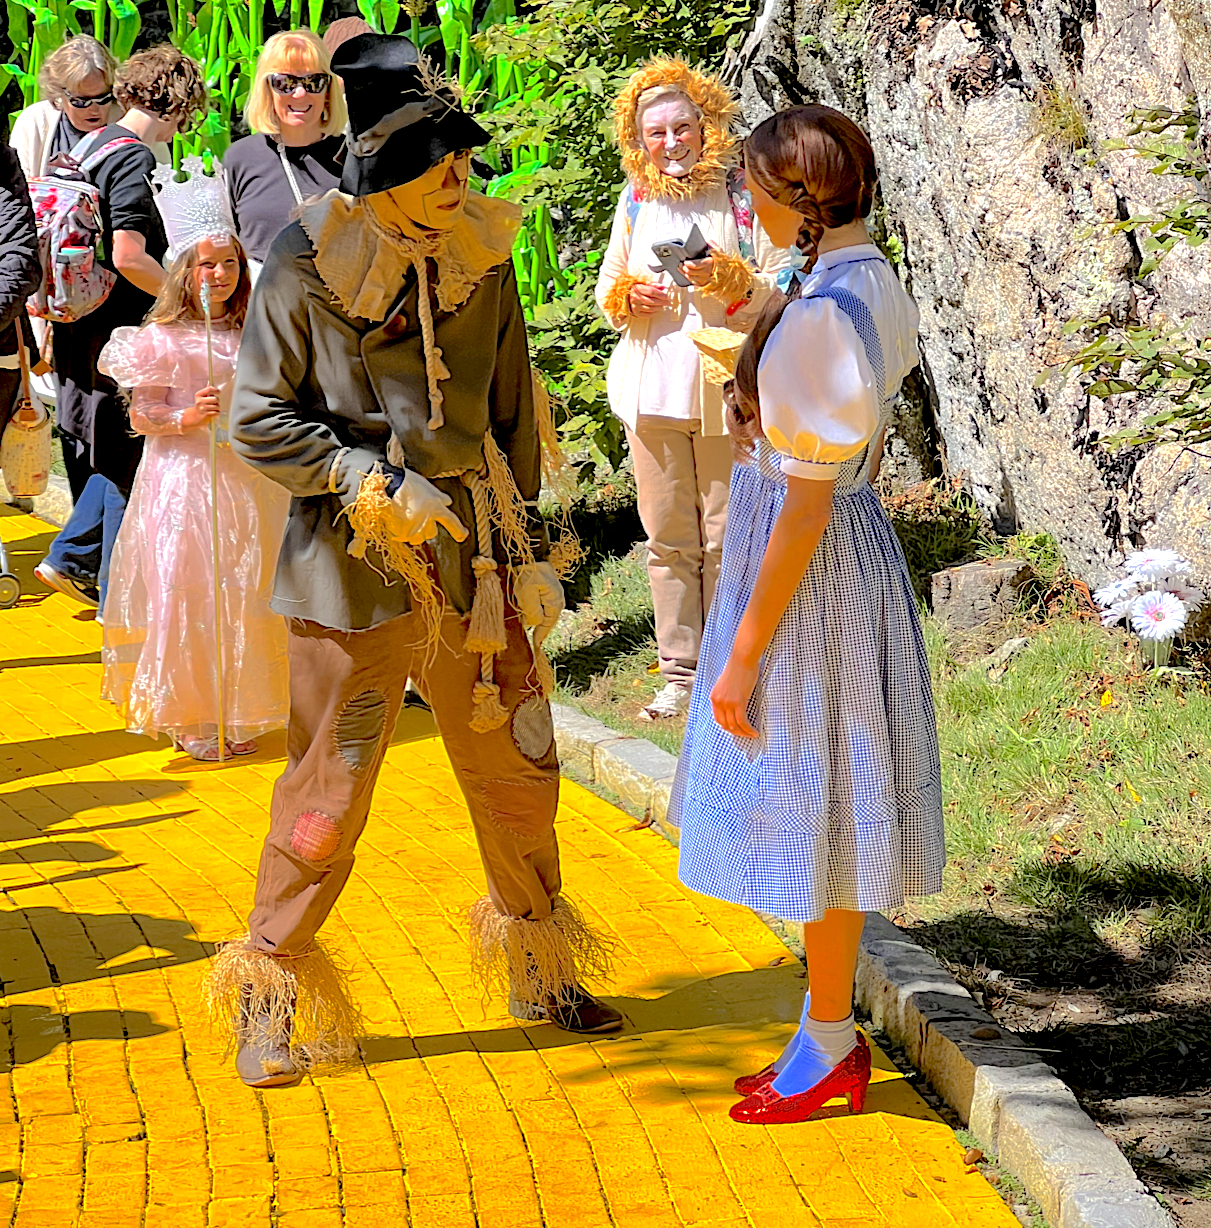 Wizard of Oz Theme Park